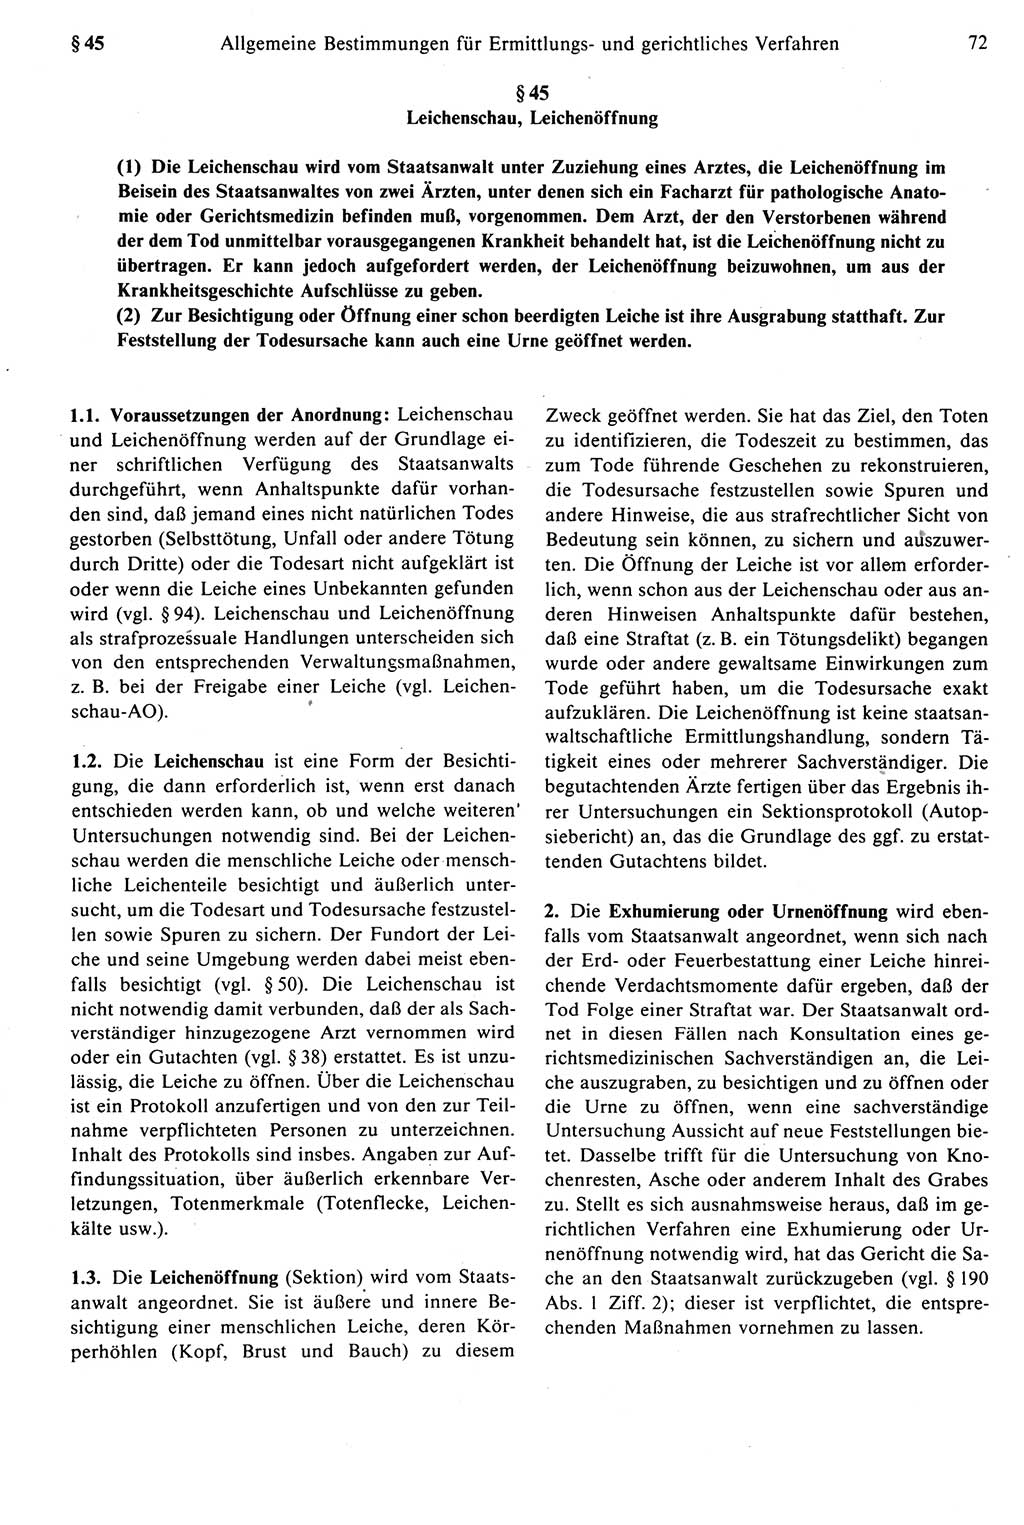 Strafprozeßrecht der DDR [Deutsche Demokratische Republik], Kommentar zur Strafprozeßordnung (StPO) 1987, Seite 72 (Strafprozeßr. DDR Komm. StPO 1987, S. 72)